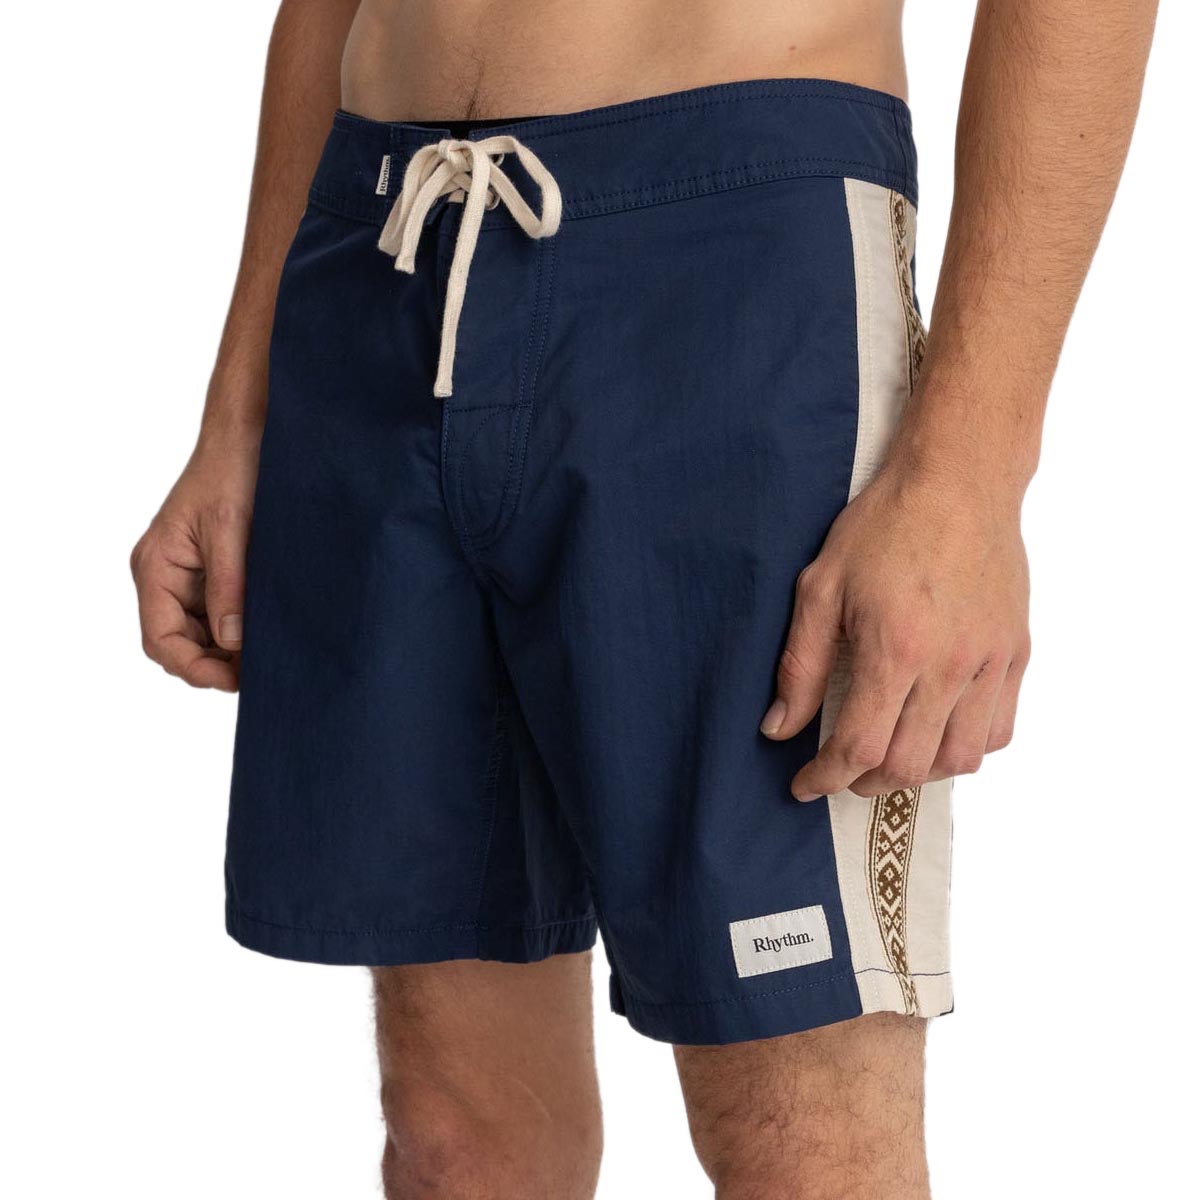 Rhythm Heritage Stripe Shorts - Navy image 2